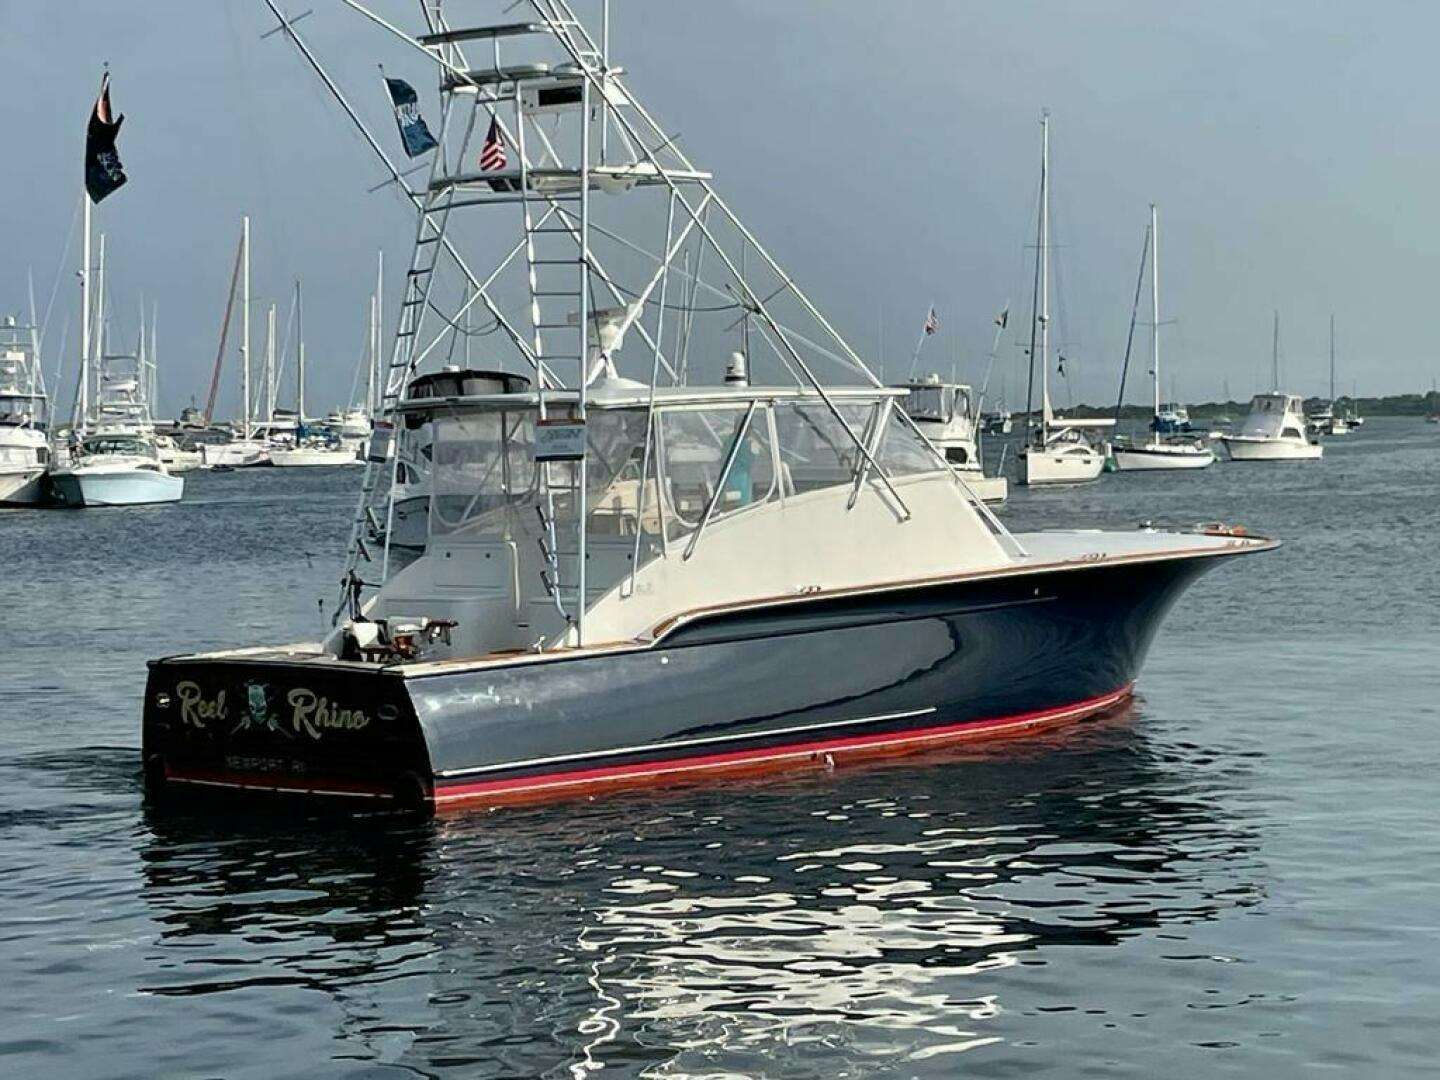 REEL RHINO Yacht for Sale in Rhode Island